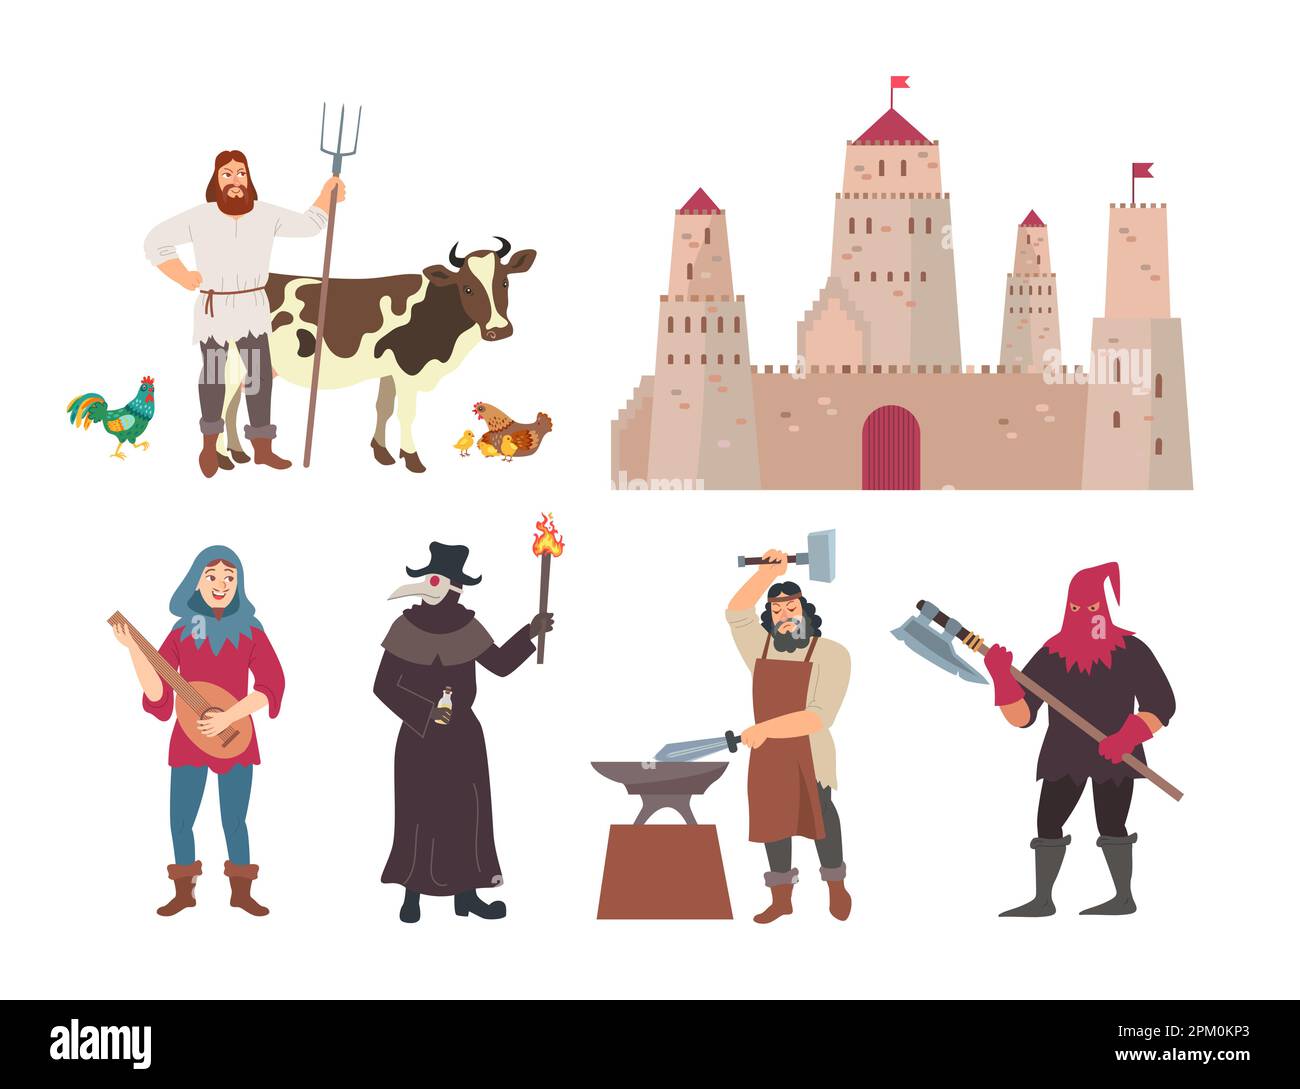 Ensemble d'illustrations de dessins animés de personnages médiévaux de différents métiers Illustration de Vecteur